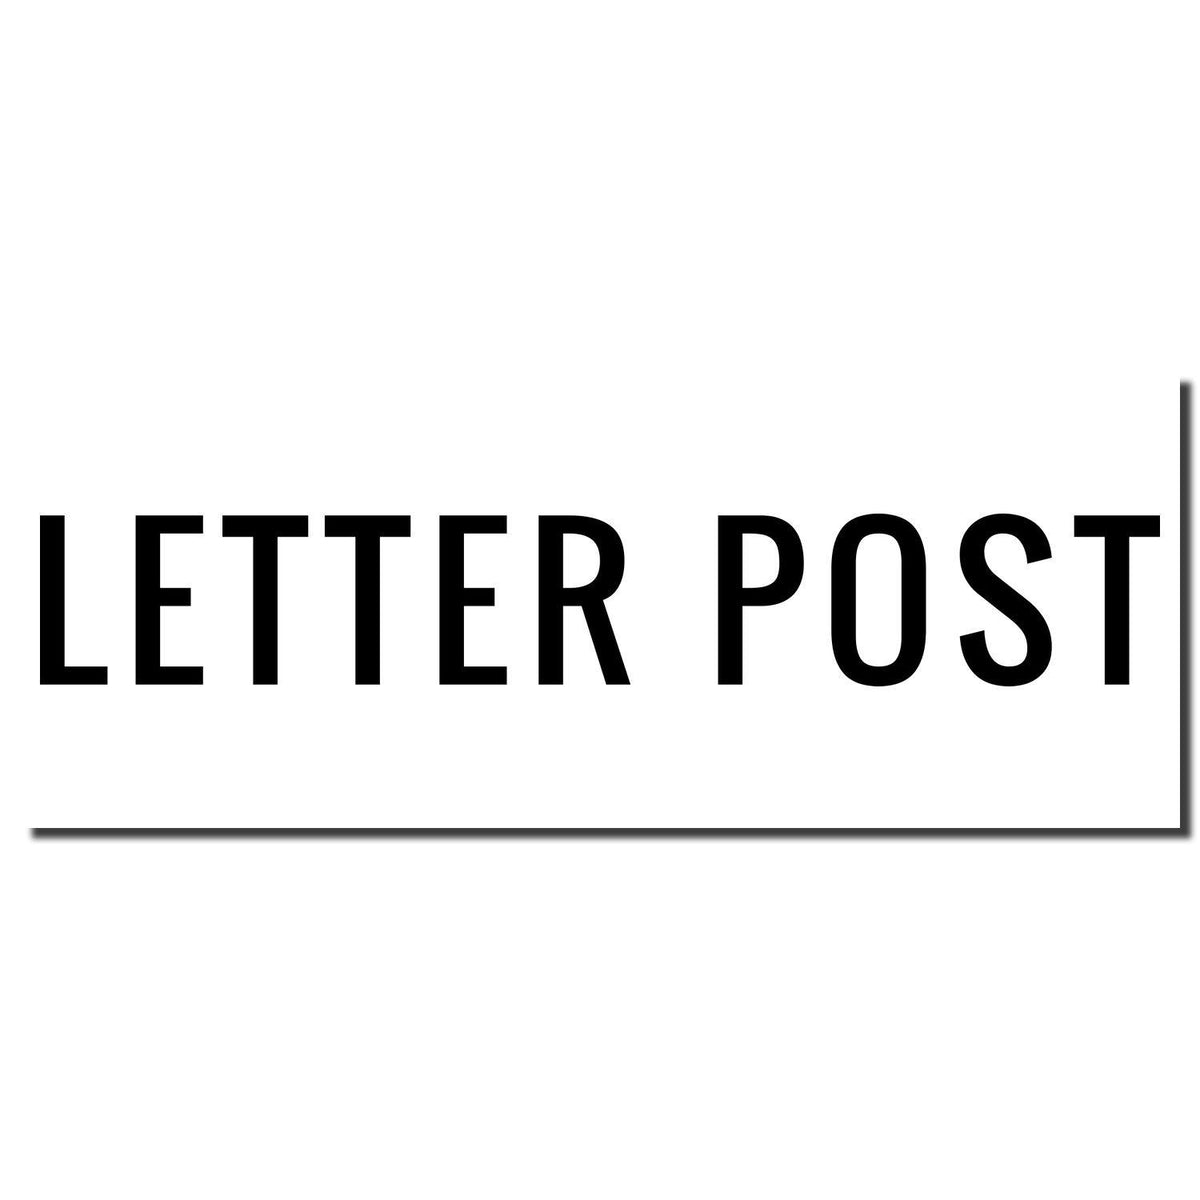 Enlarged Imprint Large Letter Post Rubber Stamp Sample